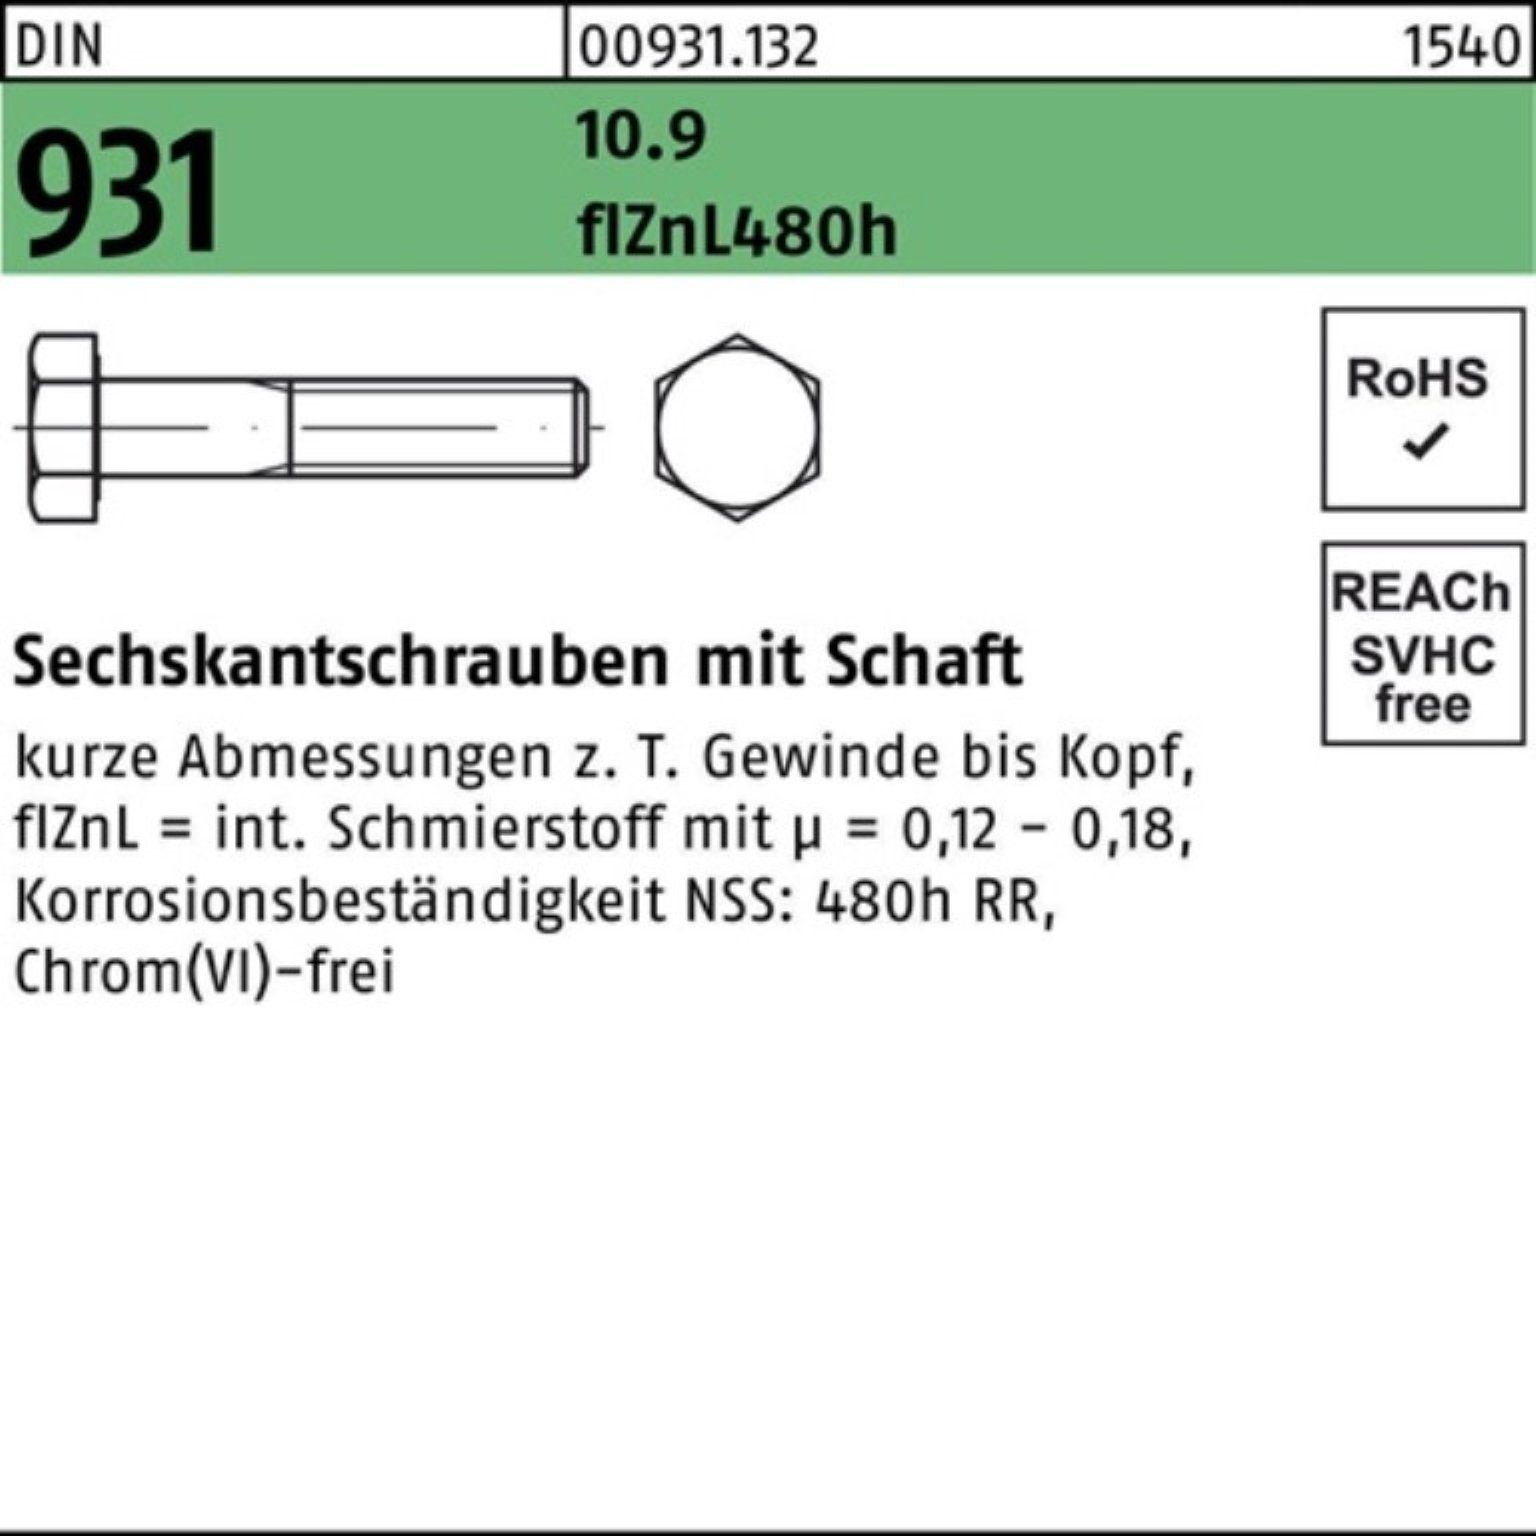 Reyher Sechskantschraube Schaft DIN Sechskantschraube 931 Pack 100er 150 M24x flZnL/nc/x/x 10.9